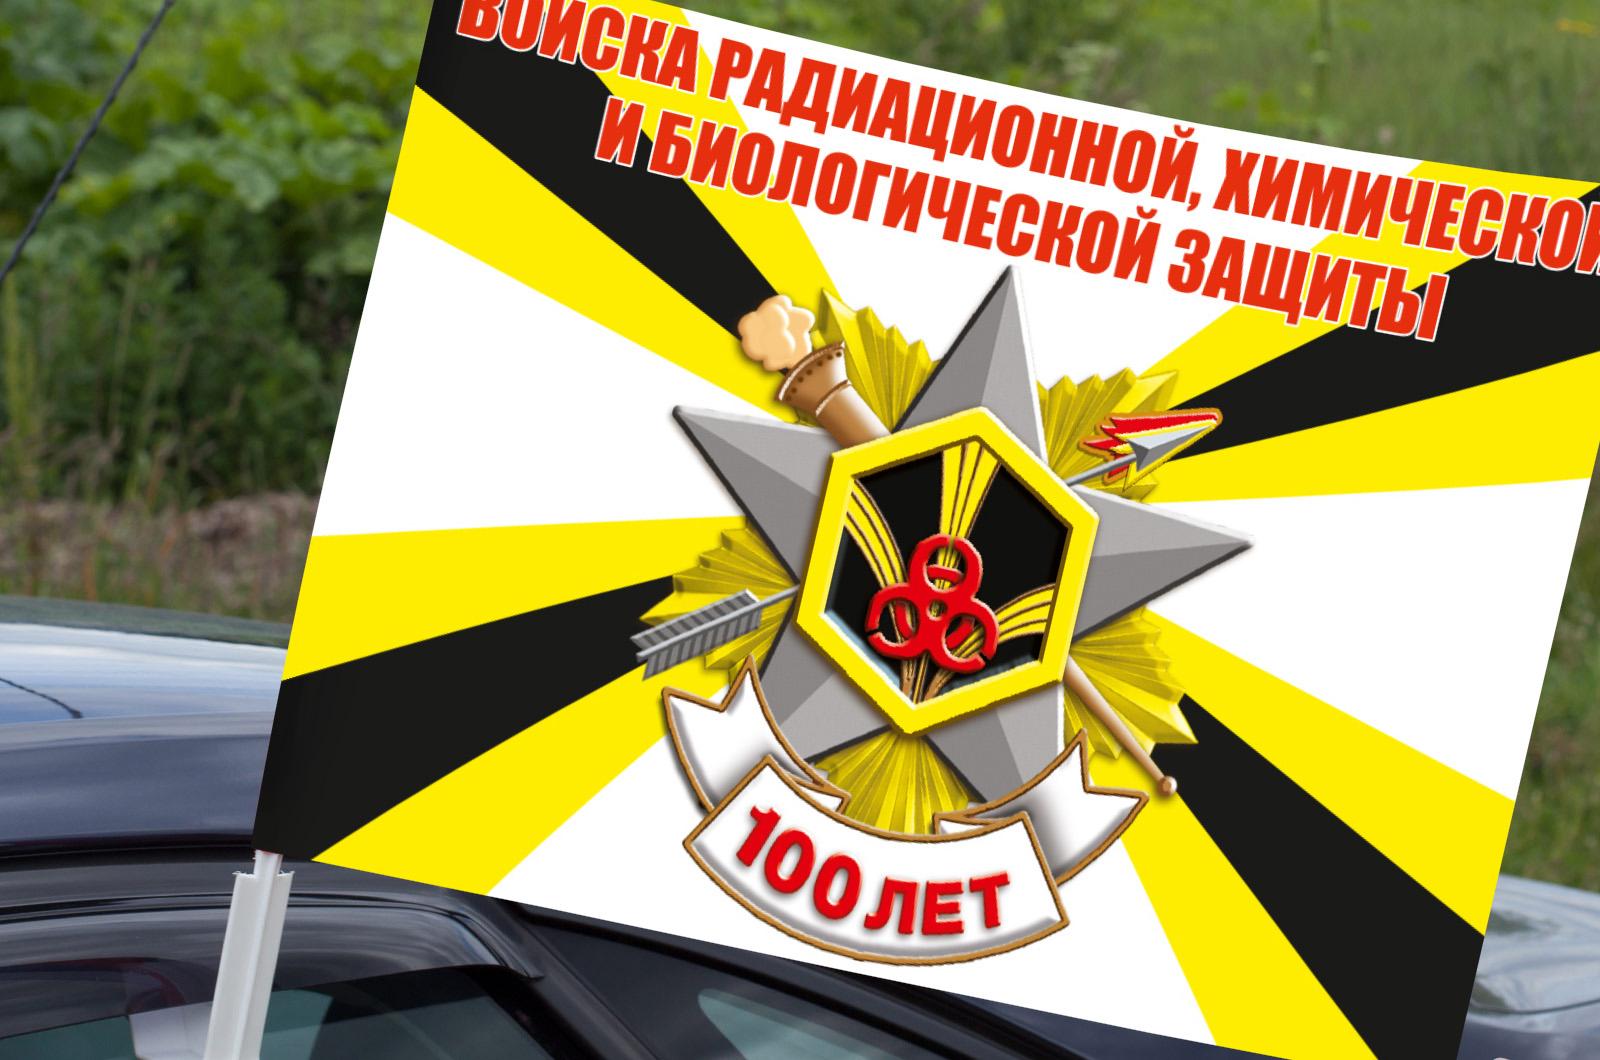 Флаг на машину с кронштейном 100-летие Войск РХБ защиты